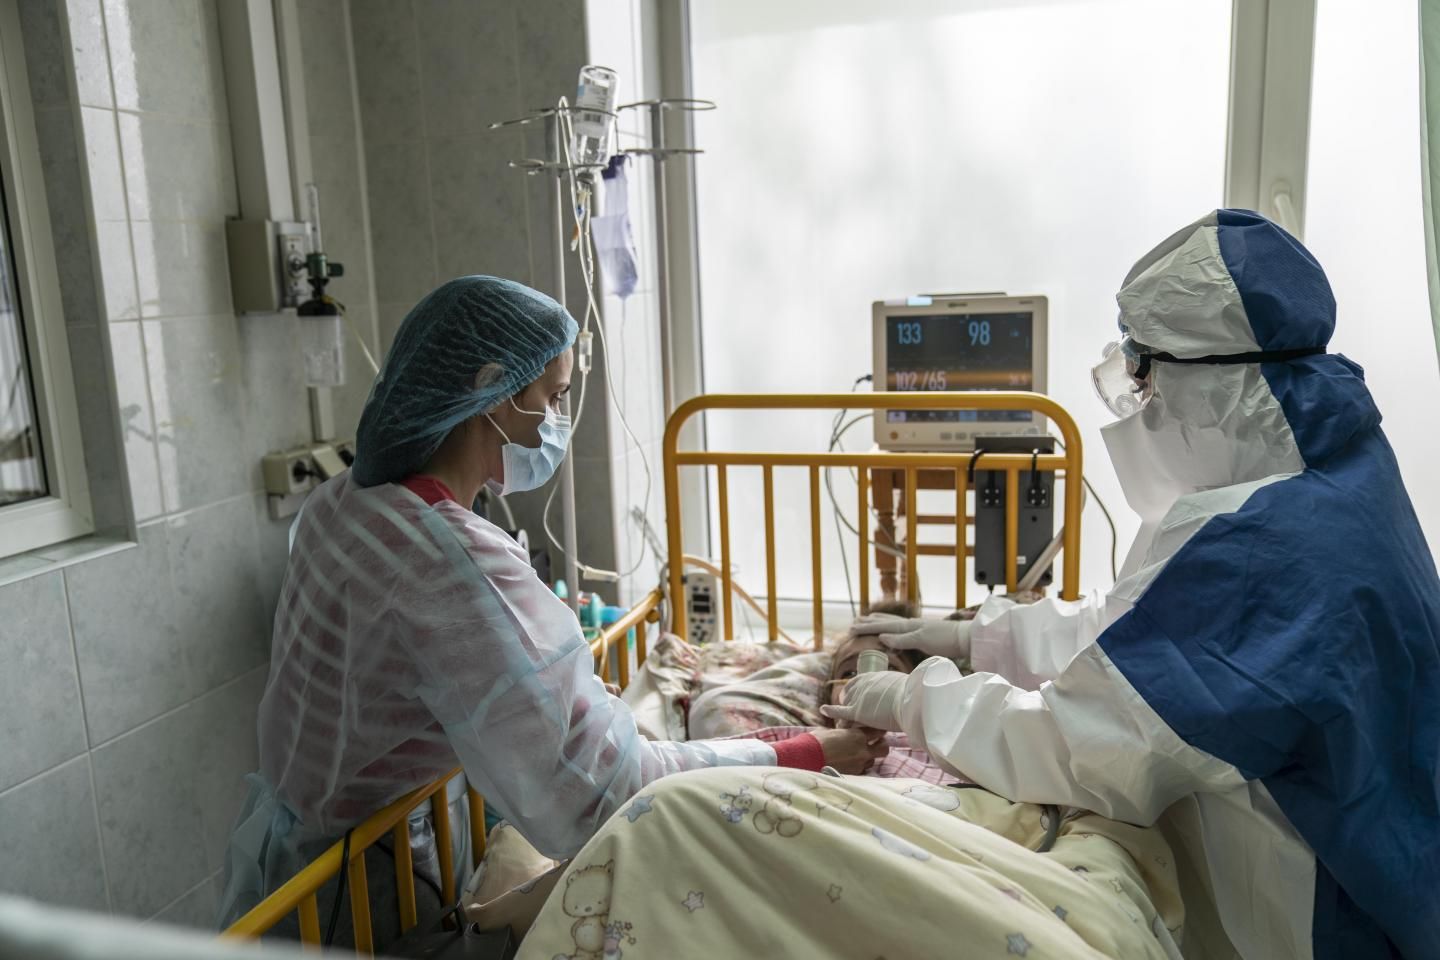 Пацієнти лежать в коридорах: у лікарні Франківська критична ситуація, зайняті всі ліжка